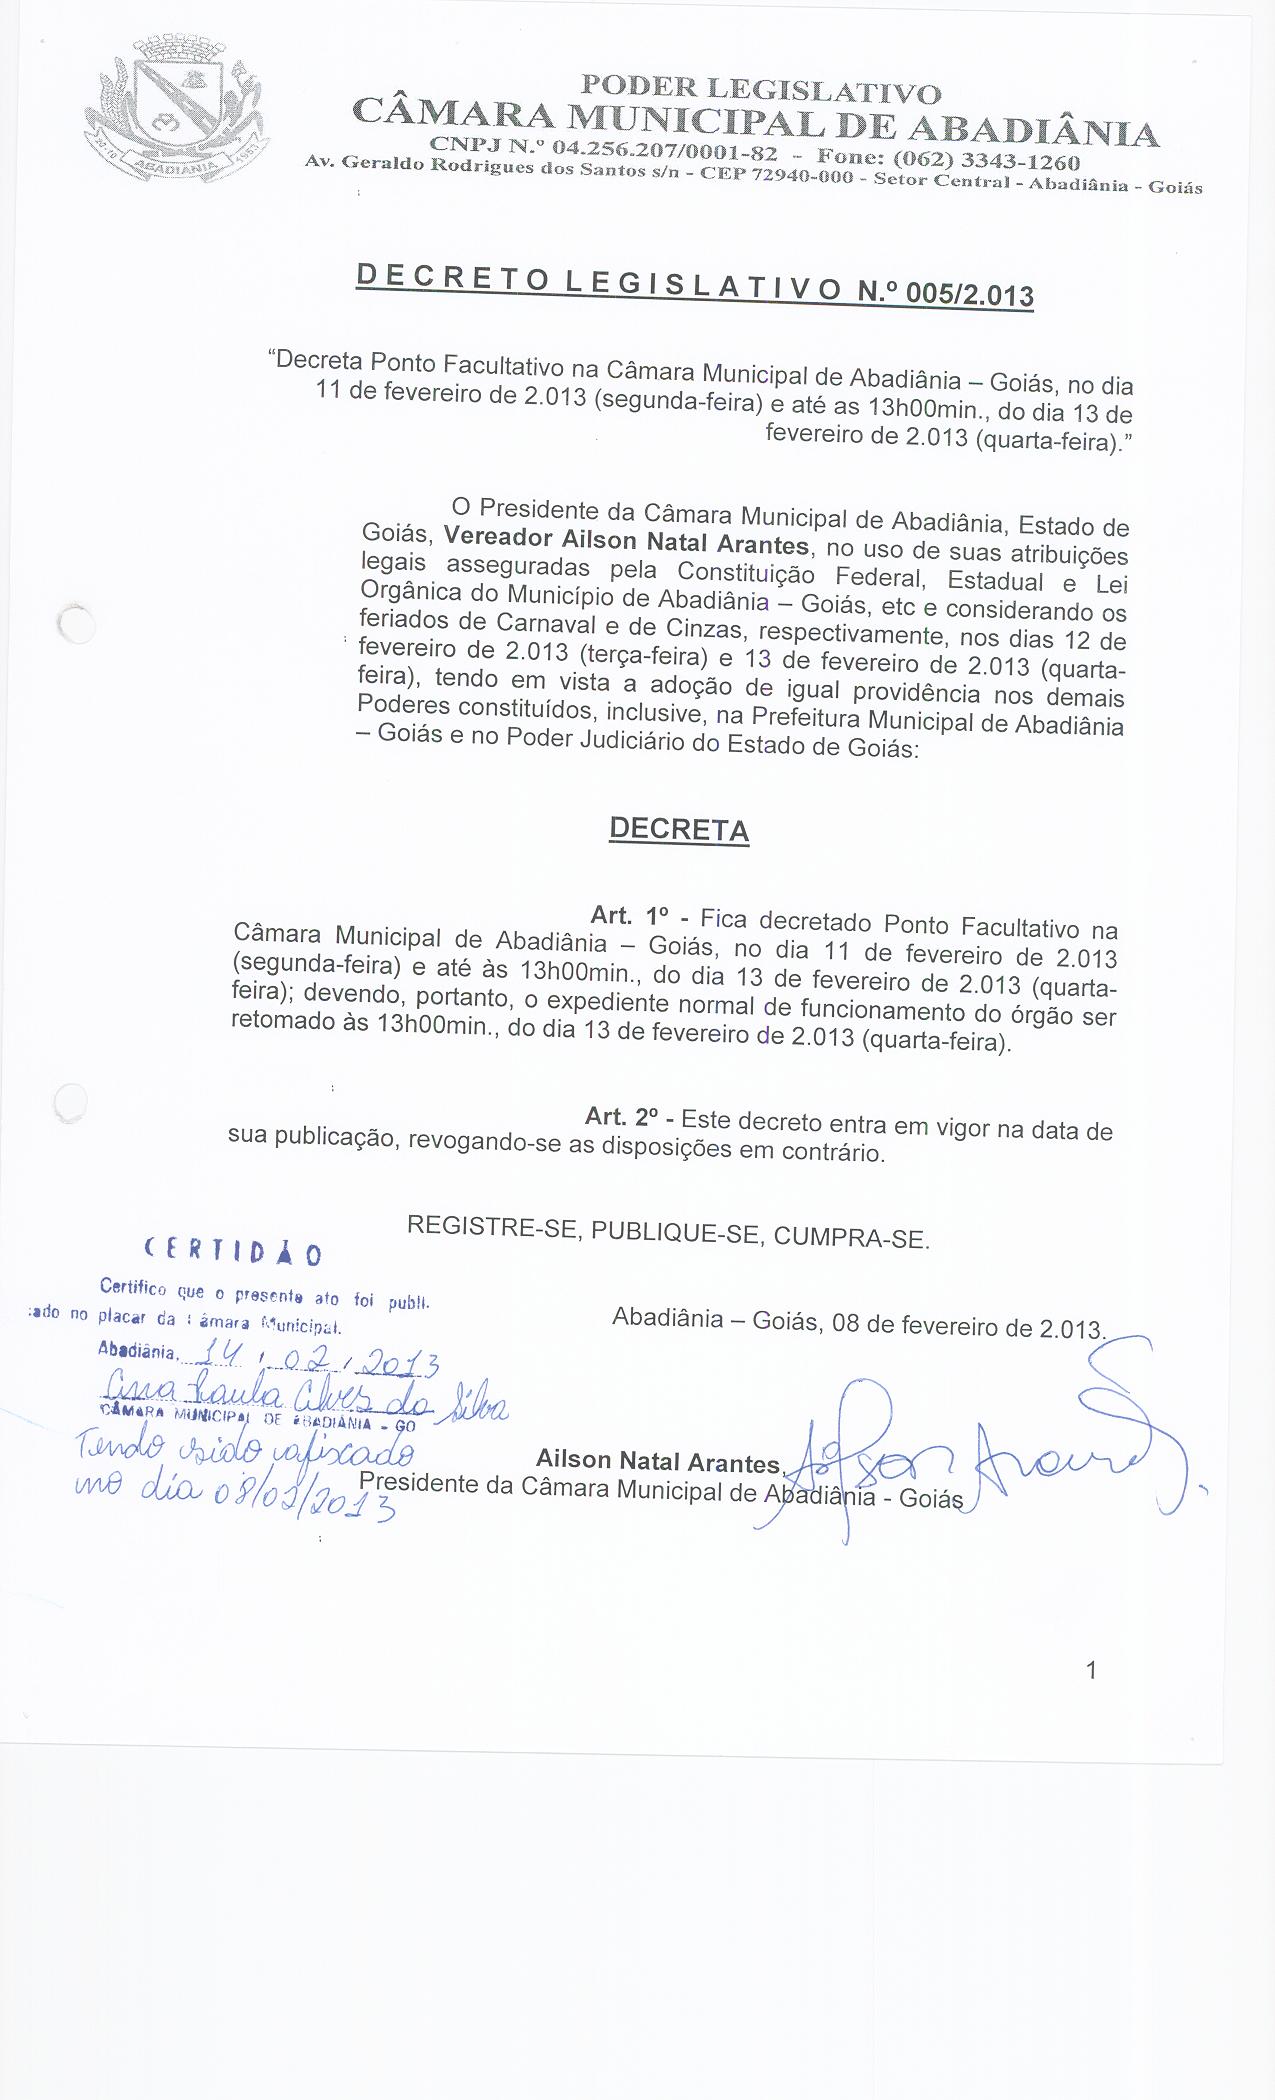 Decreto Legislativo n° 005-2013